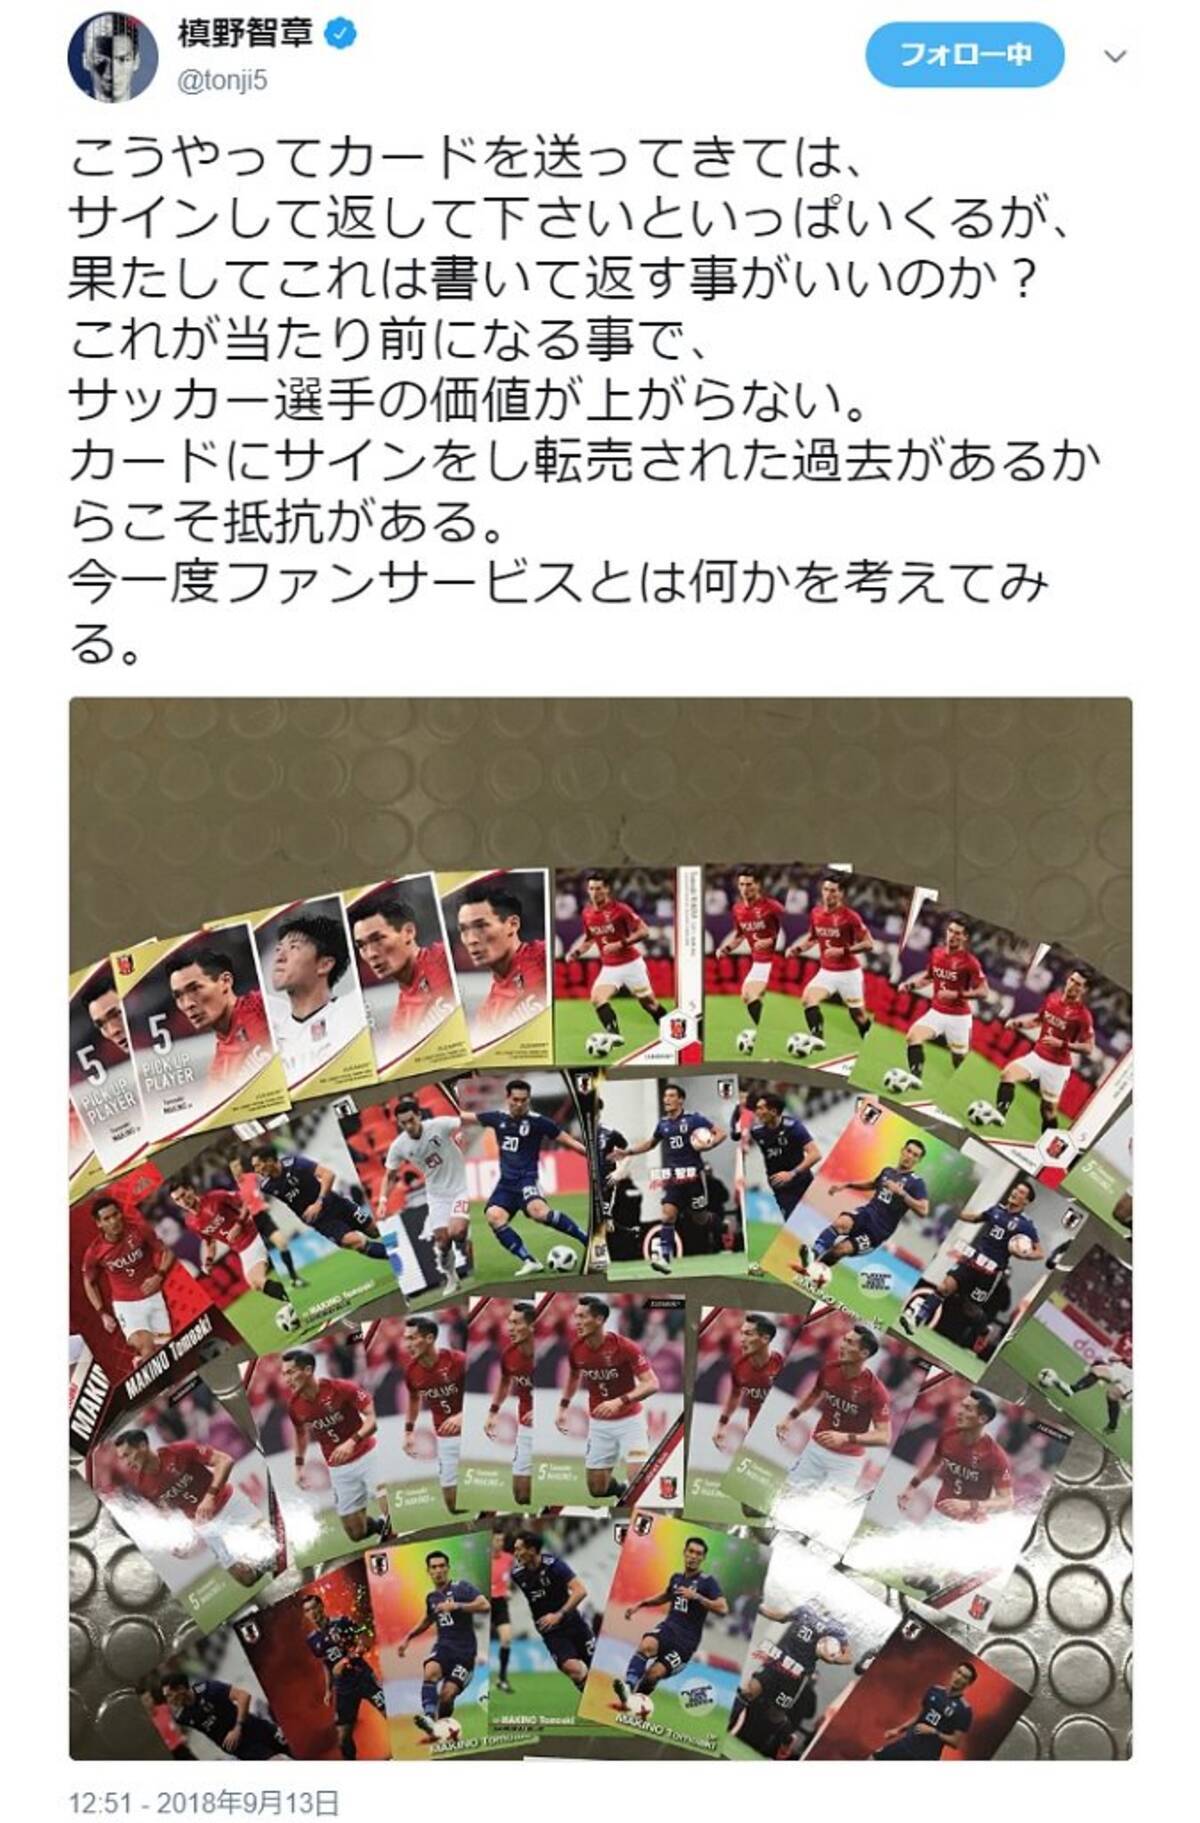 ファンサービスとは何か 浦和レッズ 槙野智章選手が度を越したファンの要求に苦言 18年9月13日 エキサイトニュース